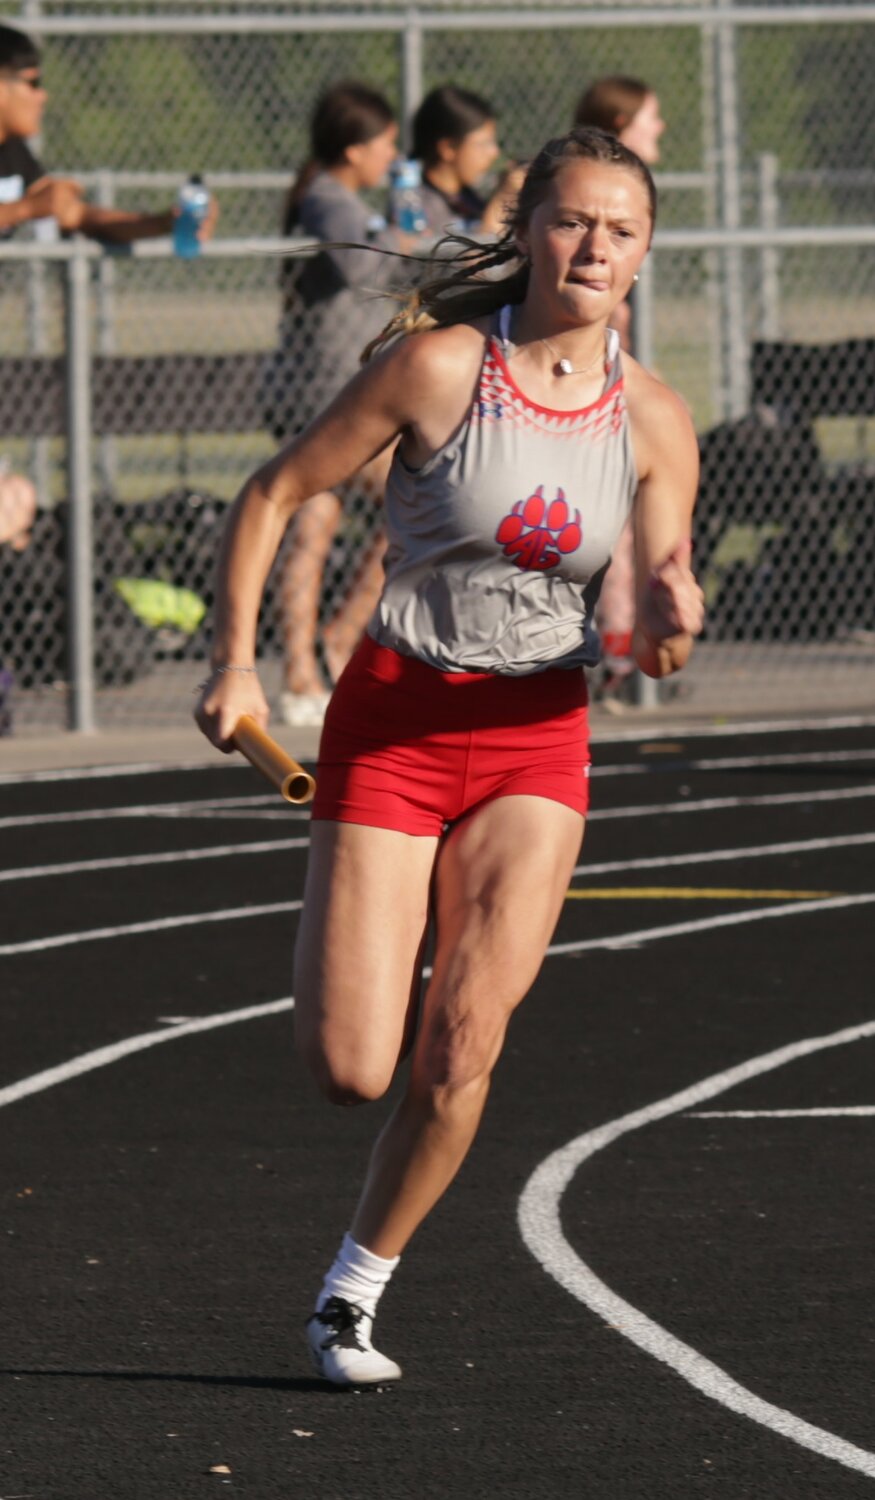 Kalli Trimble runs her leg of the winning 4x200 relay team.